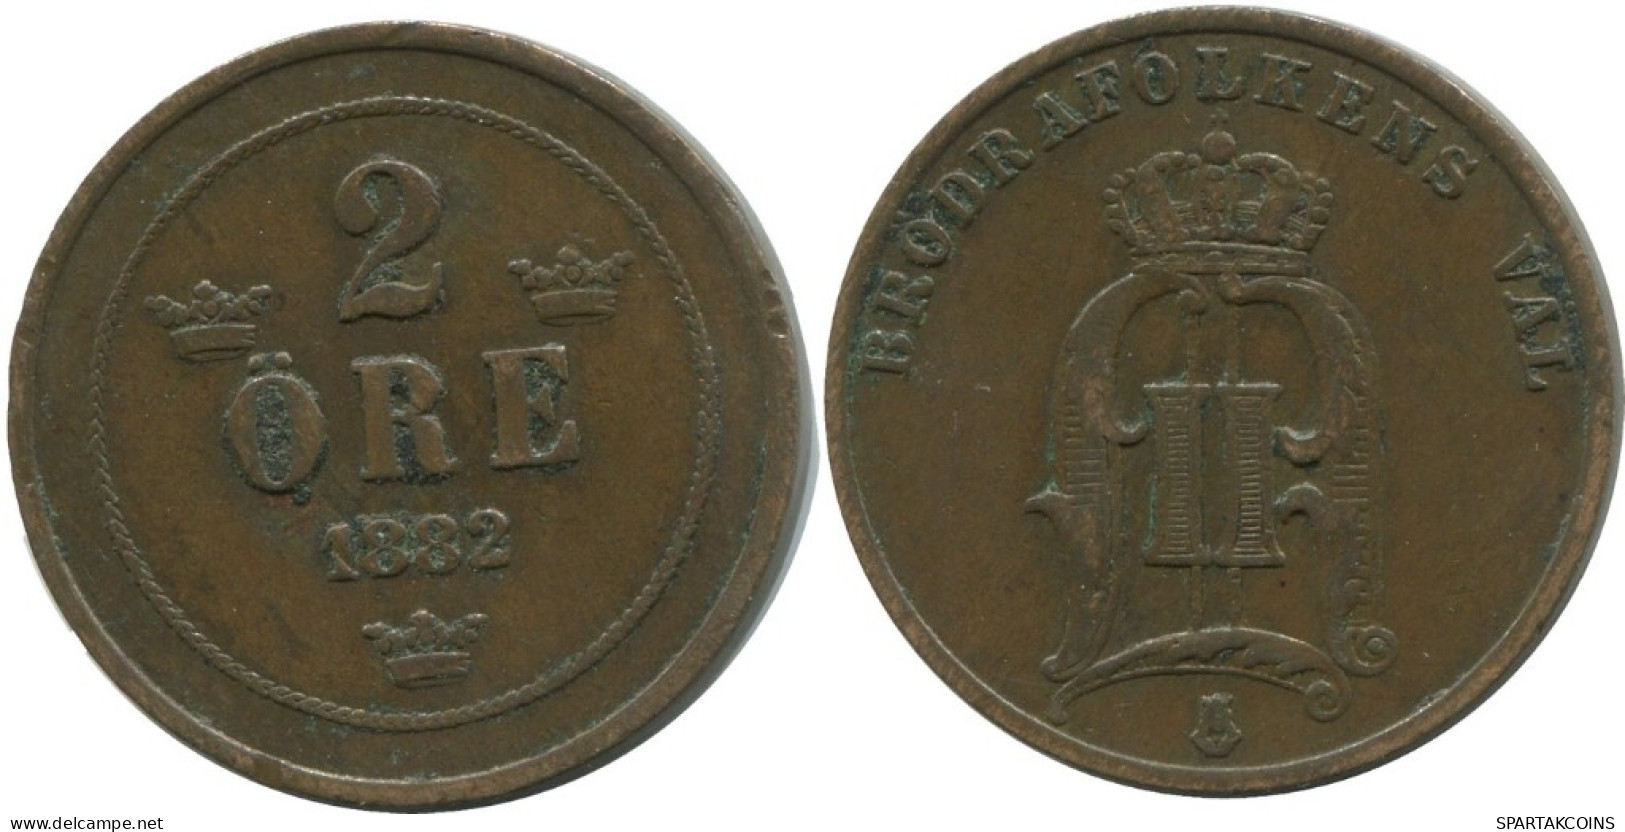 2 ORE 1892 SUECIA SWEDEN Moneda #AC901.2.E.A - Zweden